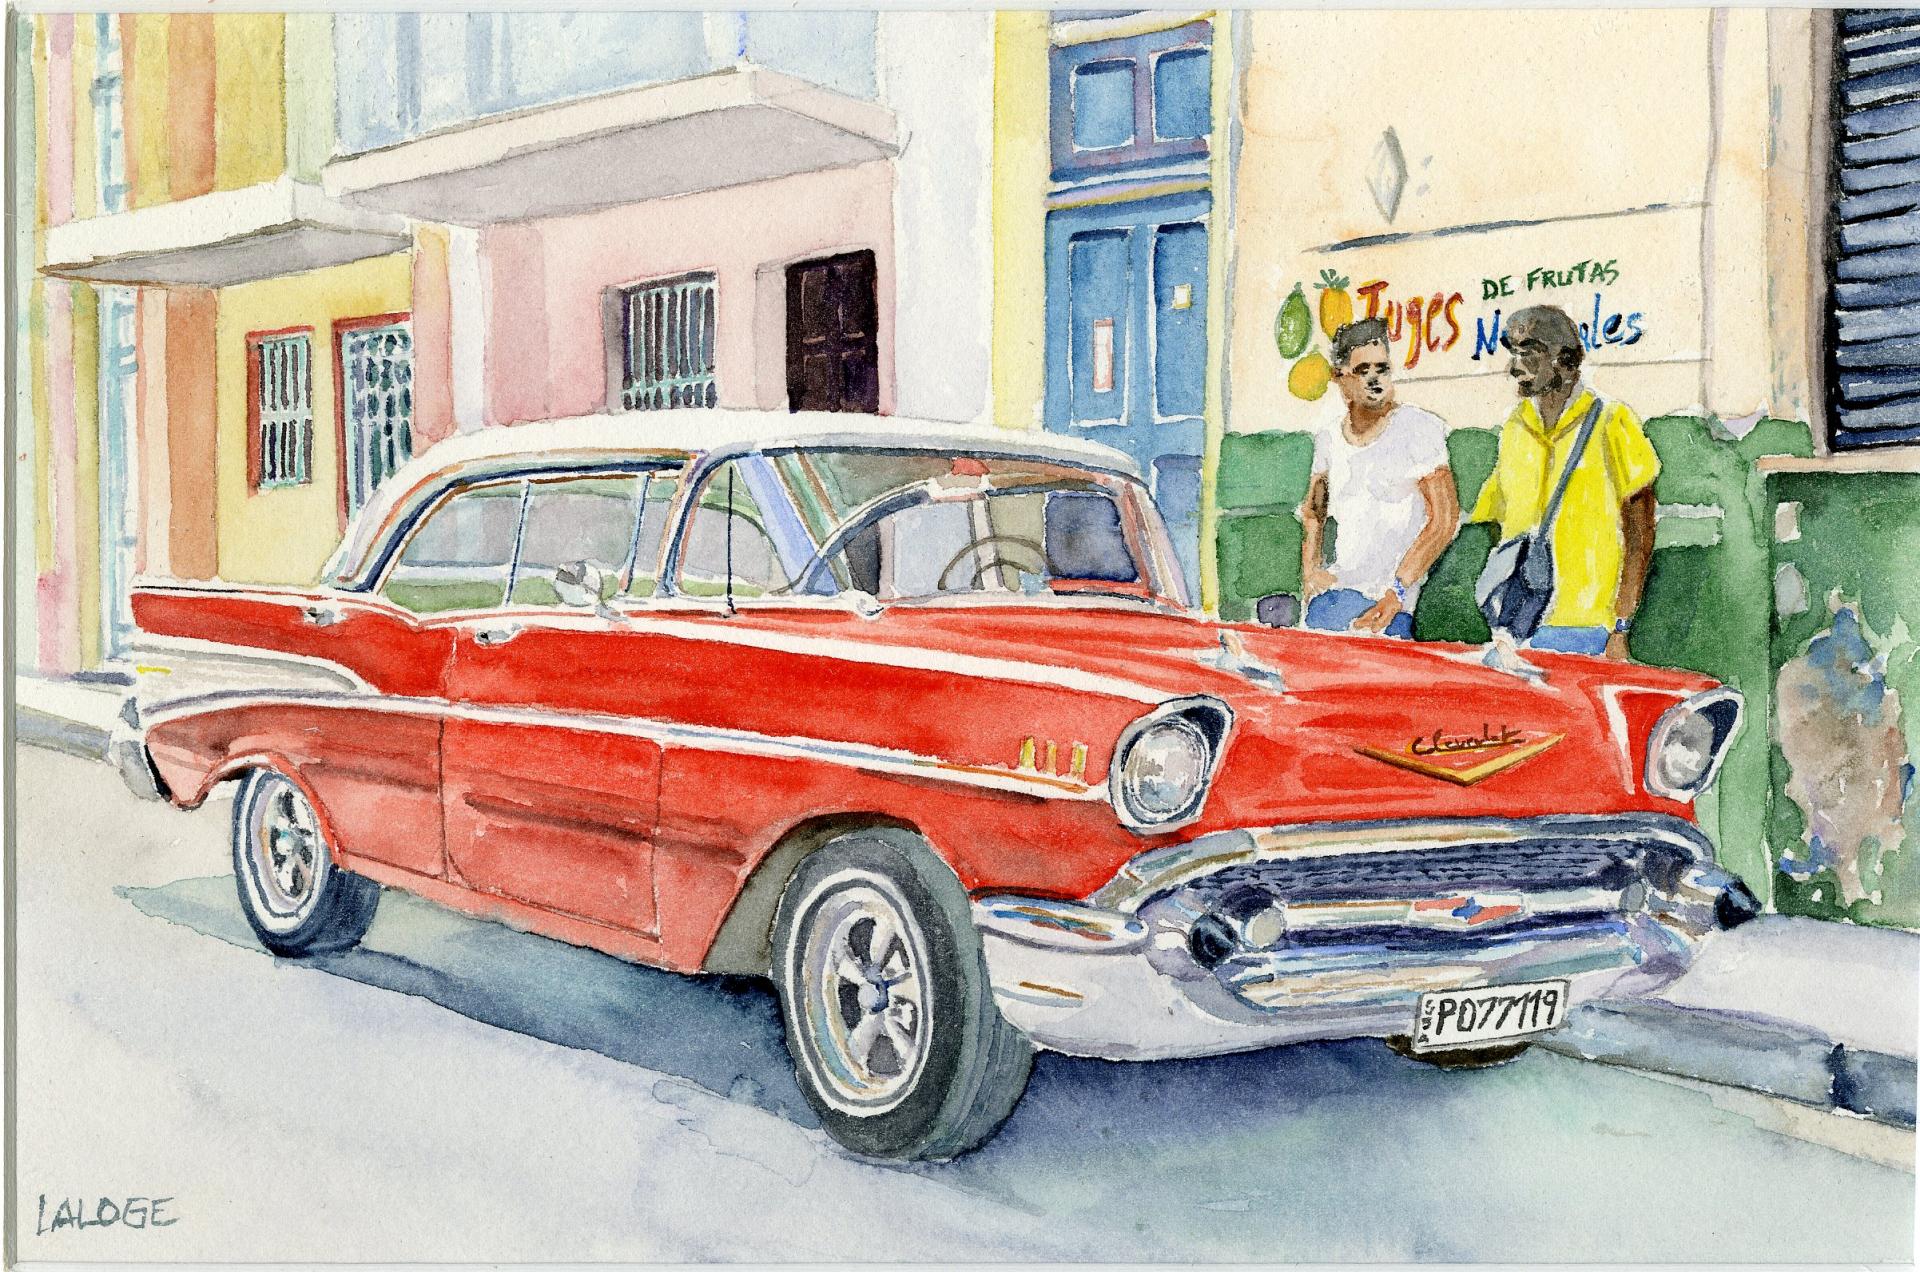 2019-07 - Une belle américaine à la Havane - cadre 30x40 - S